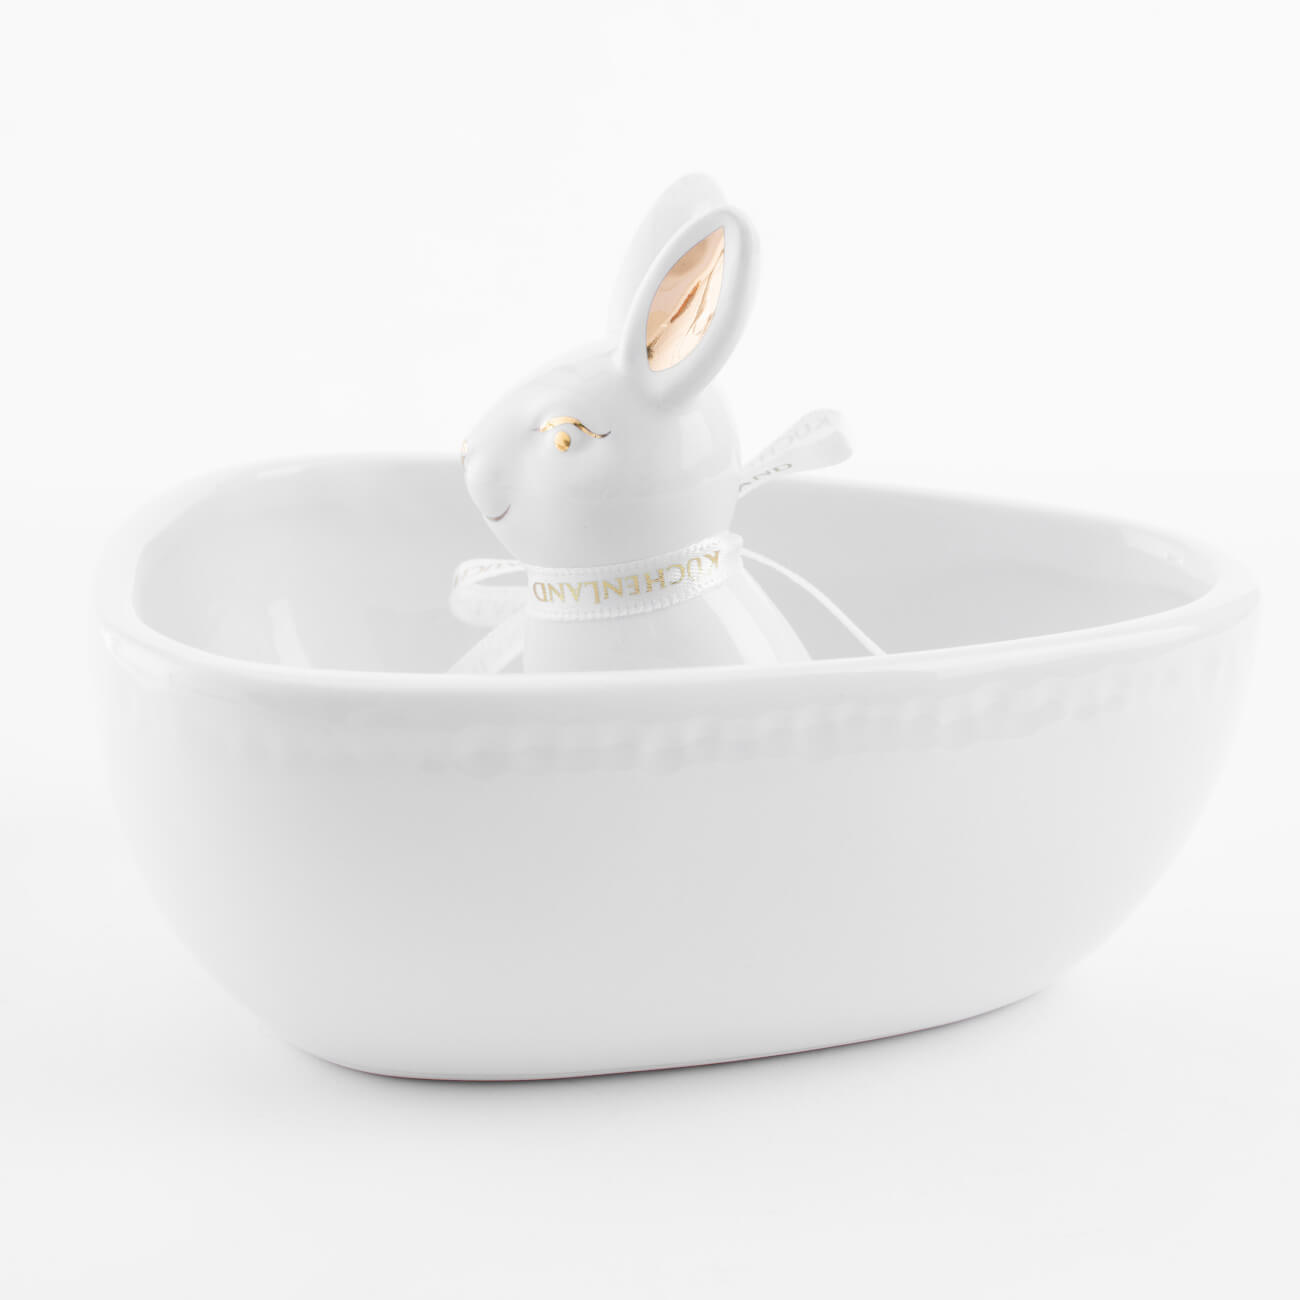 Конфетница, 13х13 см, керамика, бело-золотистая, Кролик внутри, Easter gold абразивные губки для посуды bikson